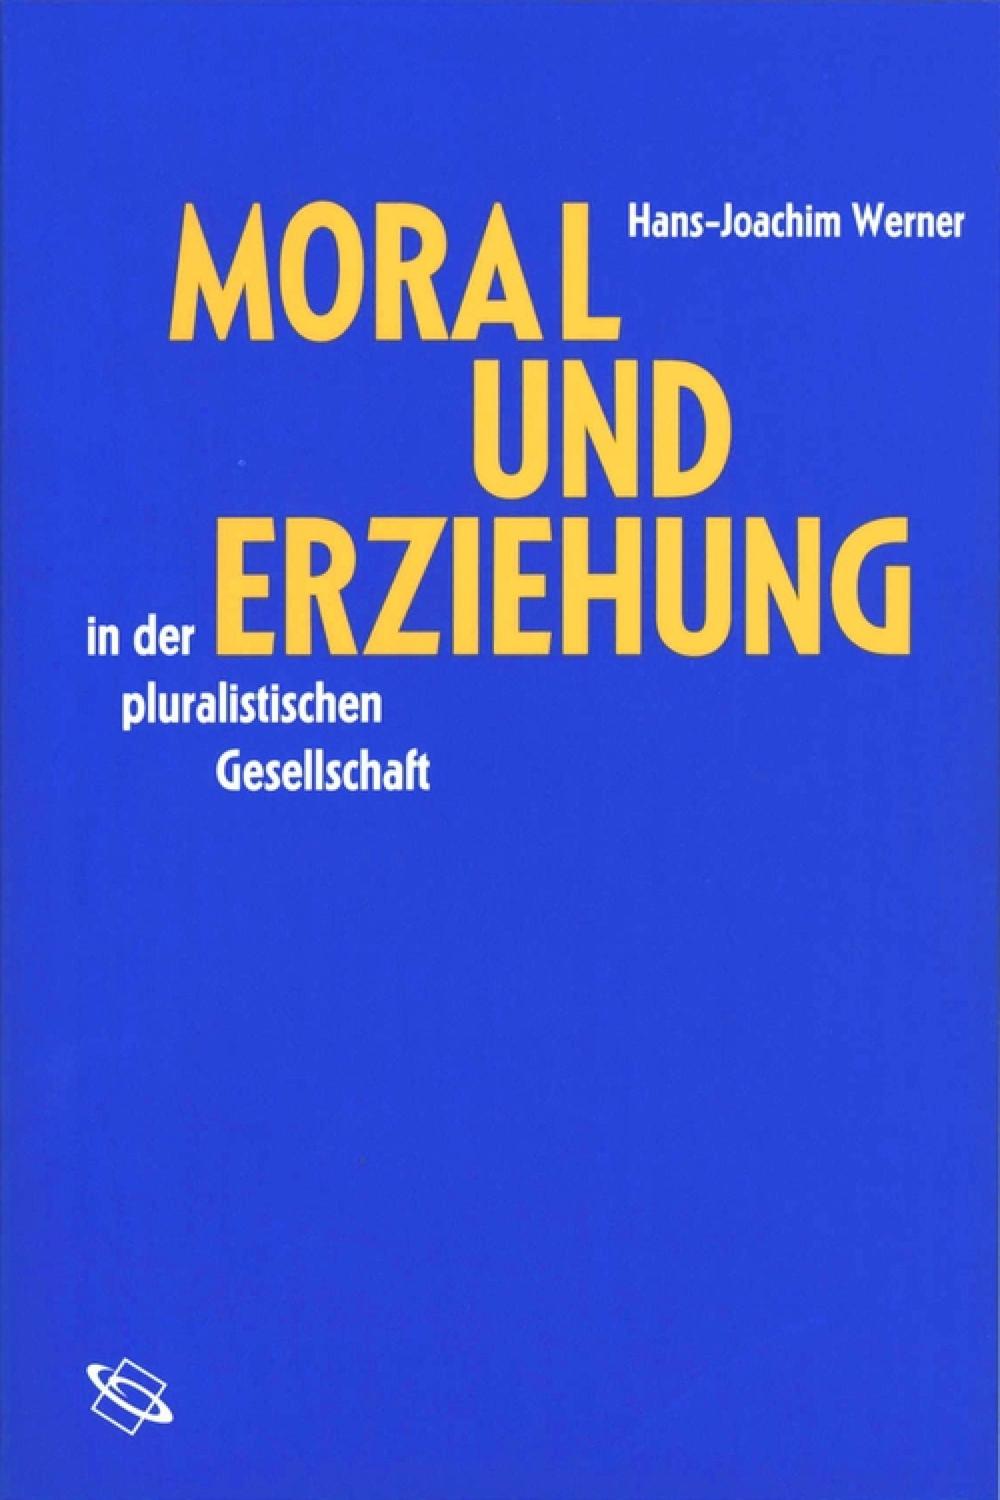 Moral und Erziehung in der pluralistischen Gesellschaft - Hans-Joachim Werner